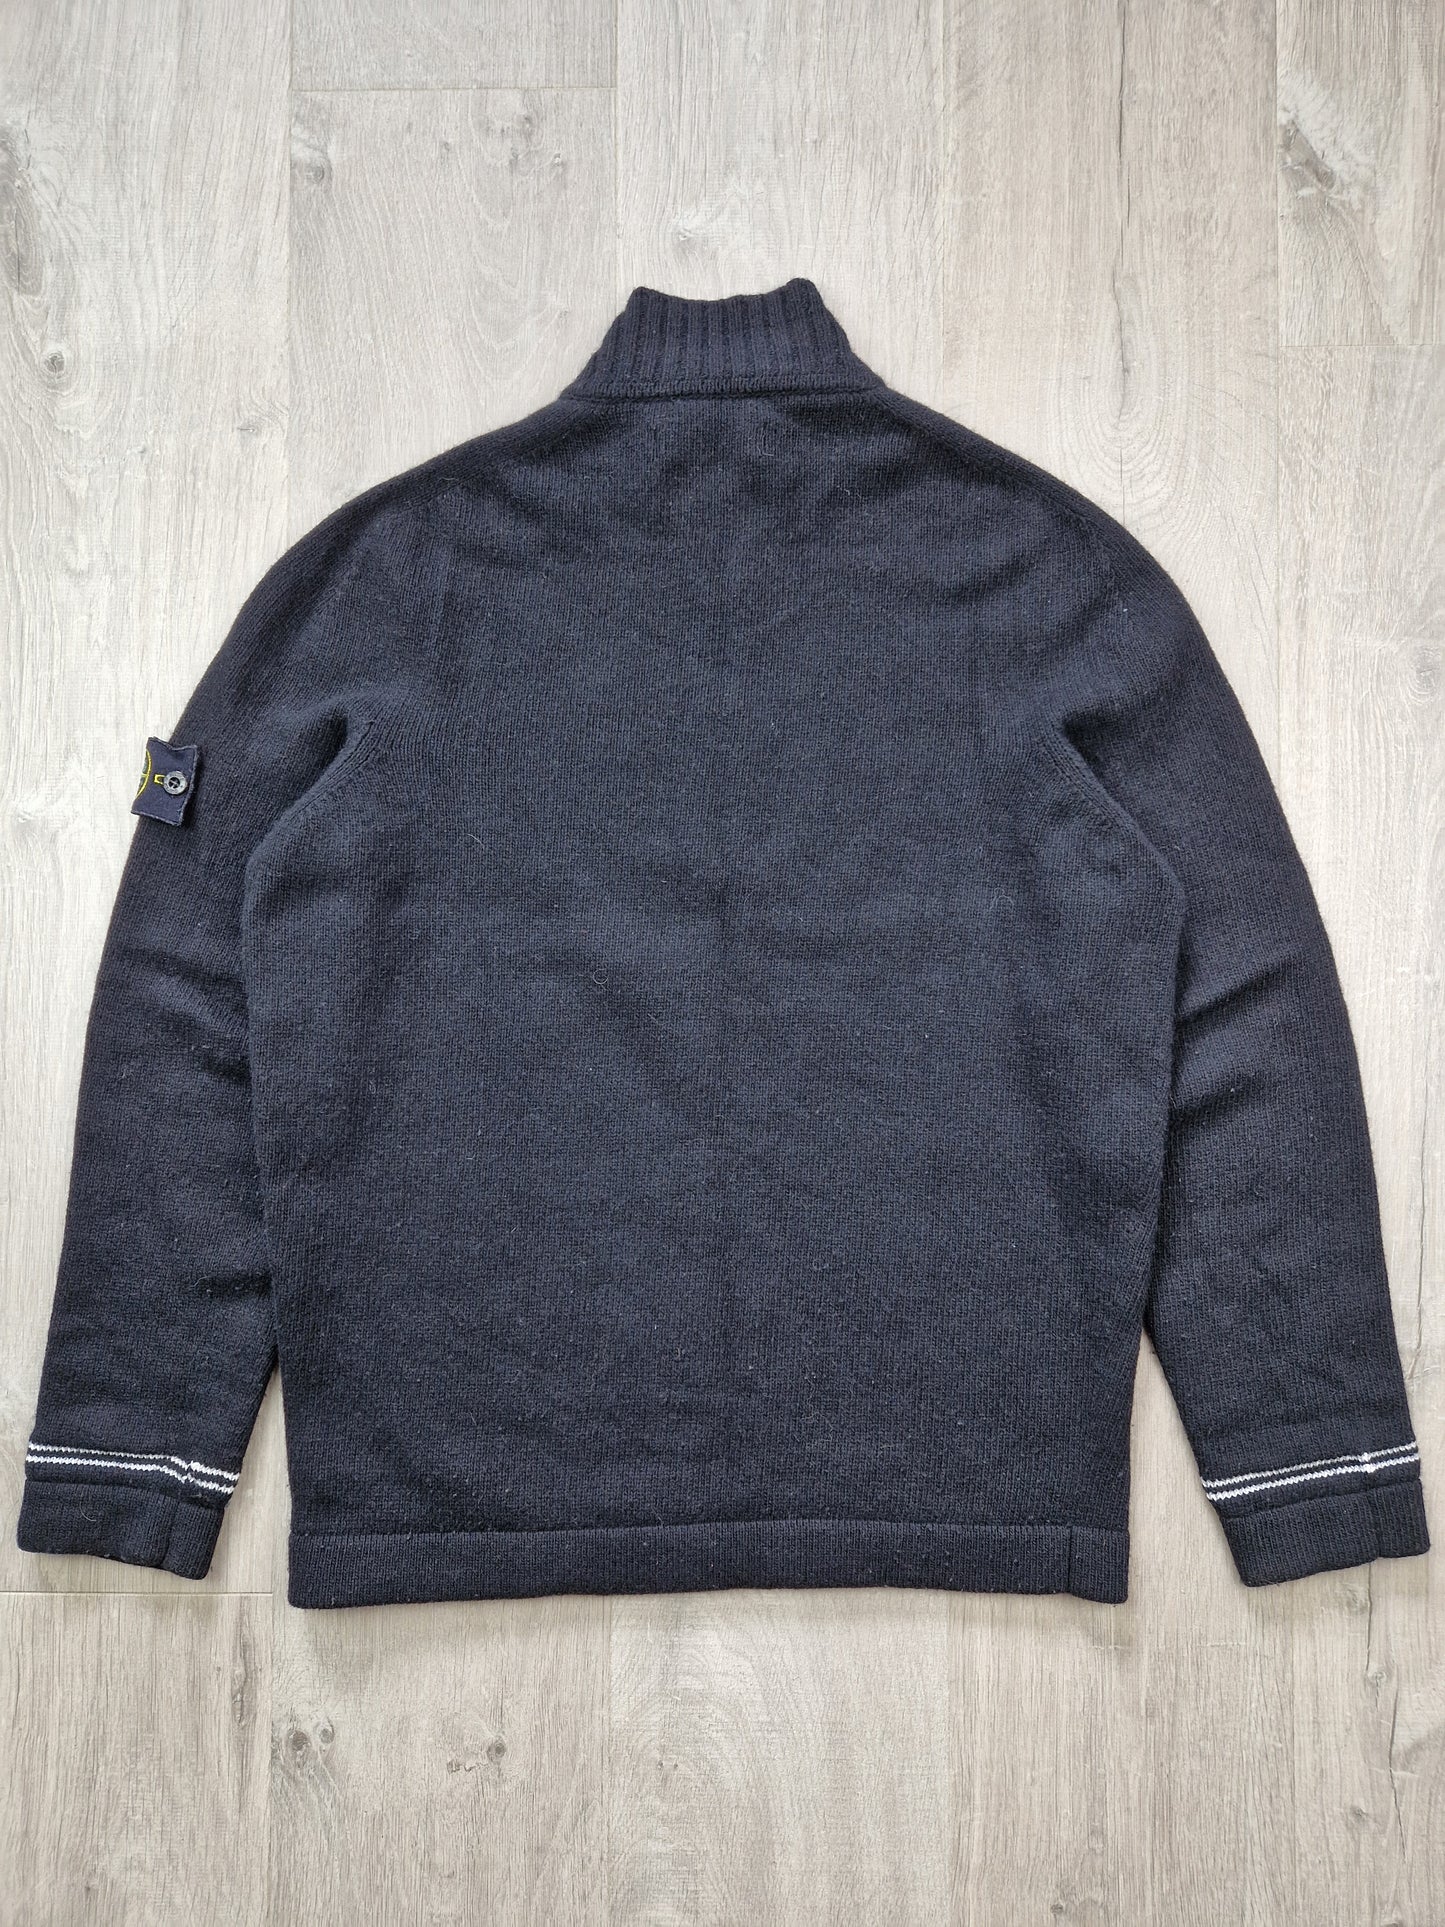 Stone Island zip neck wool jumper (L/M)